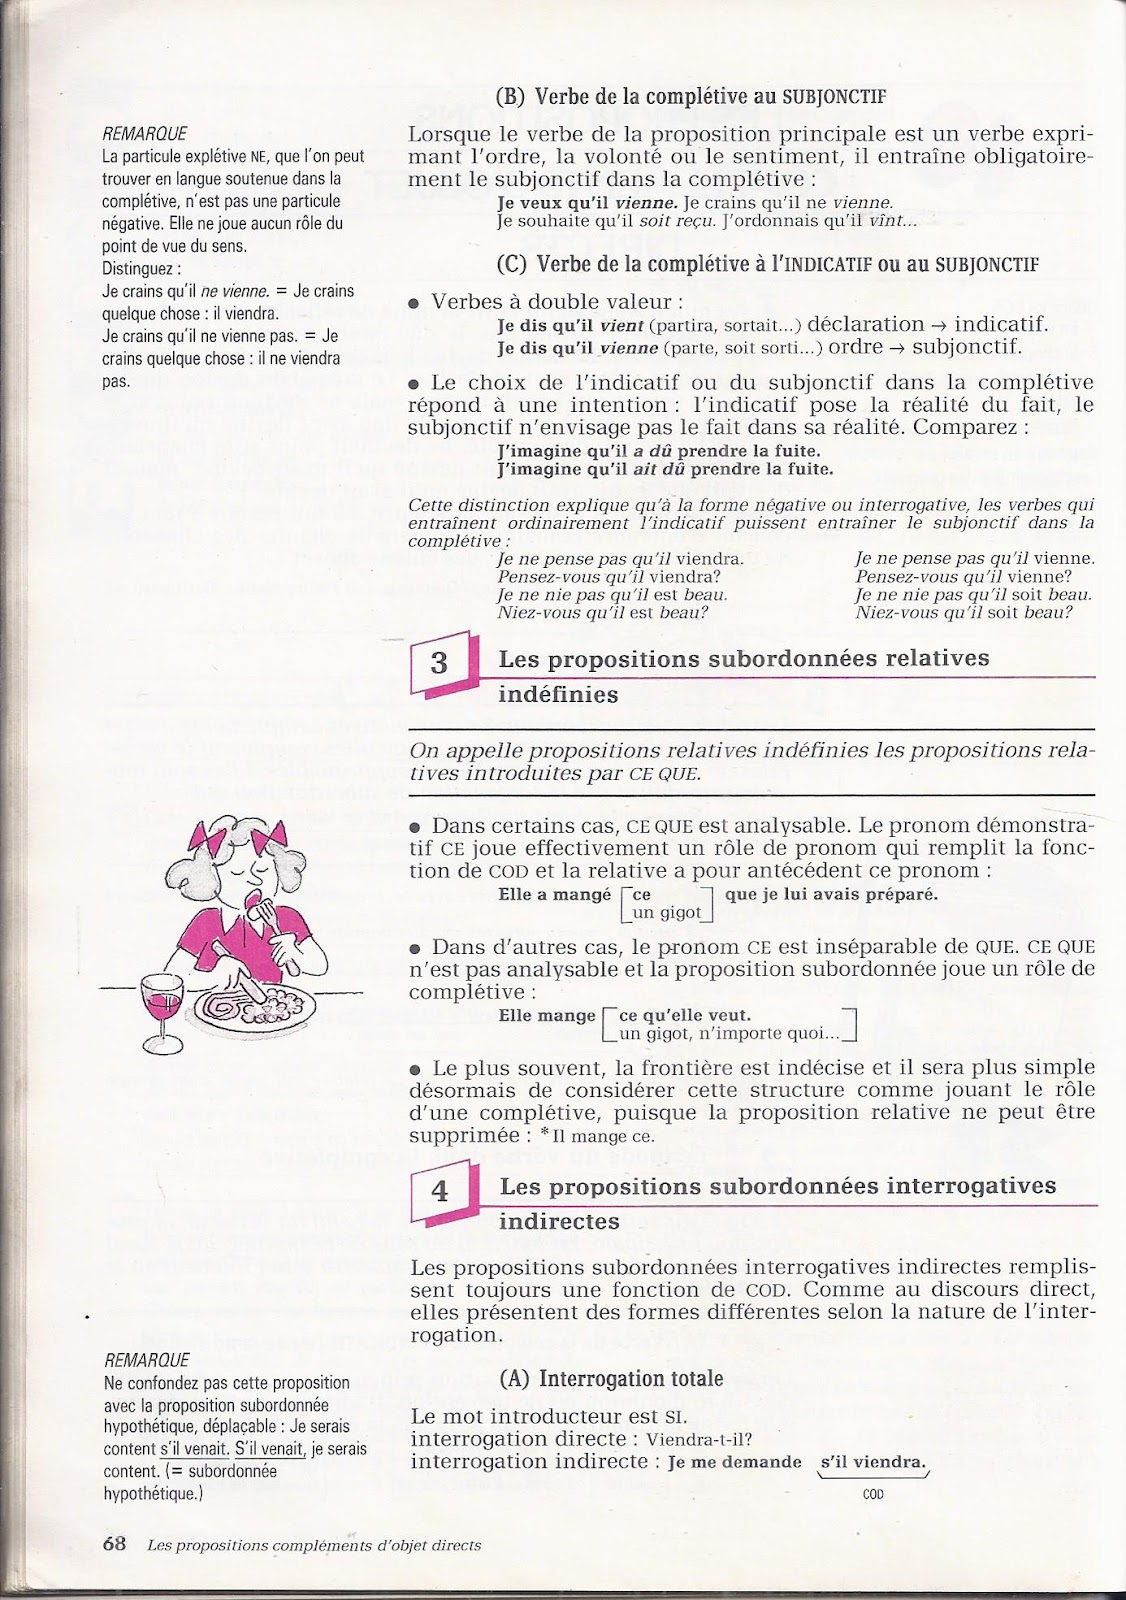 Manuels anciens: Mauffrey, Cohen, Lilti, Grammaire française 4e-3e (1983)